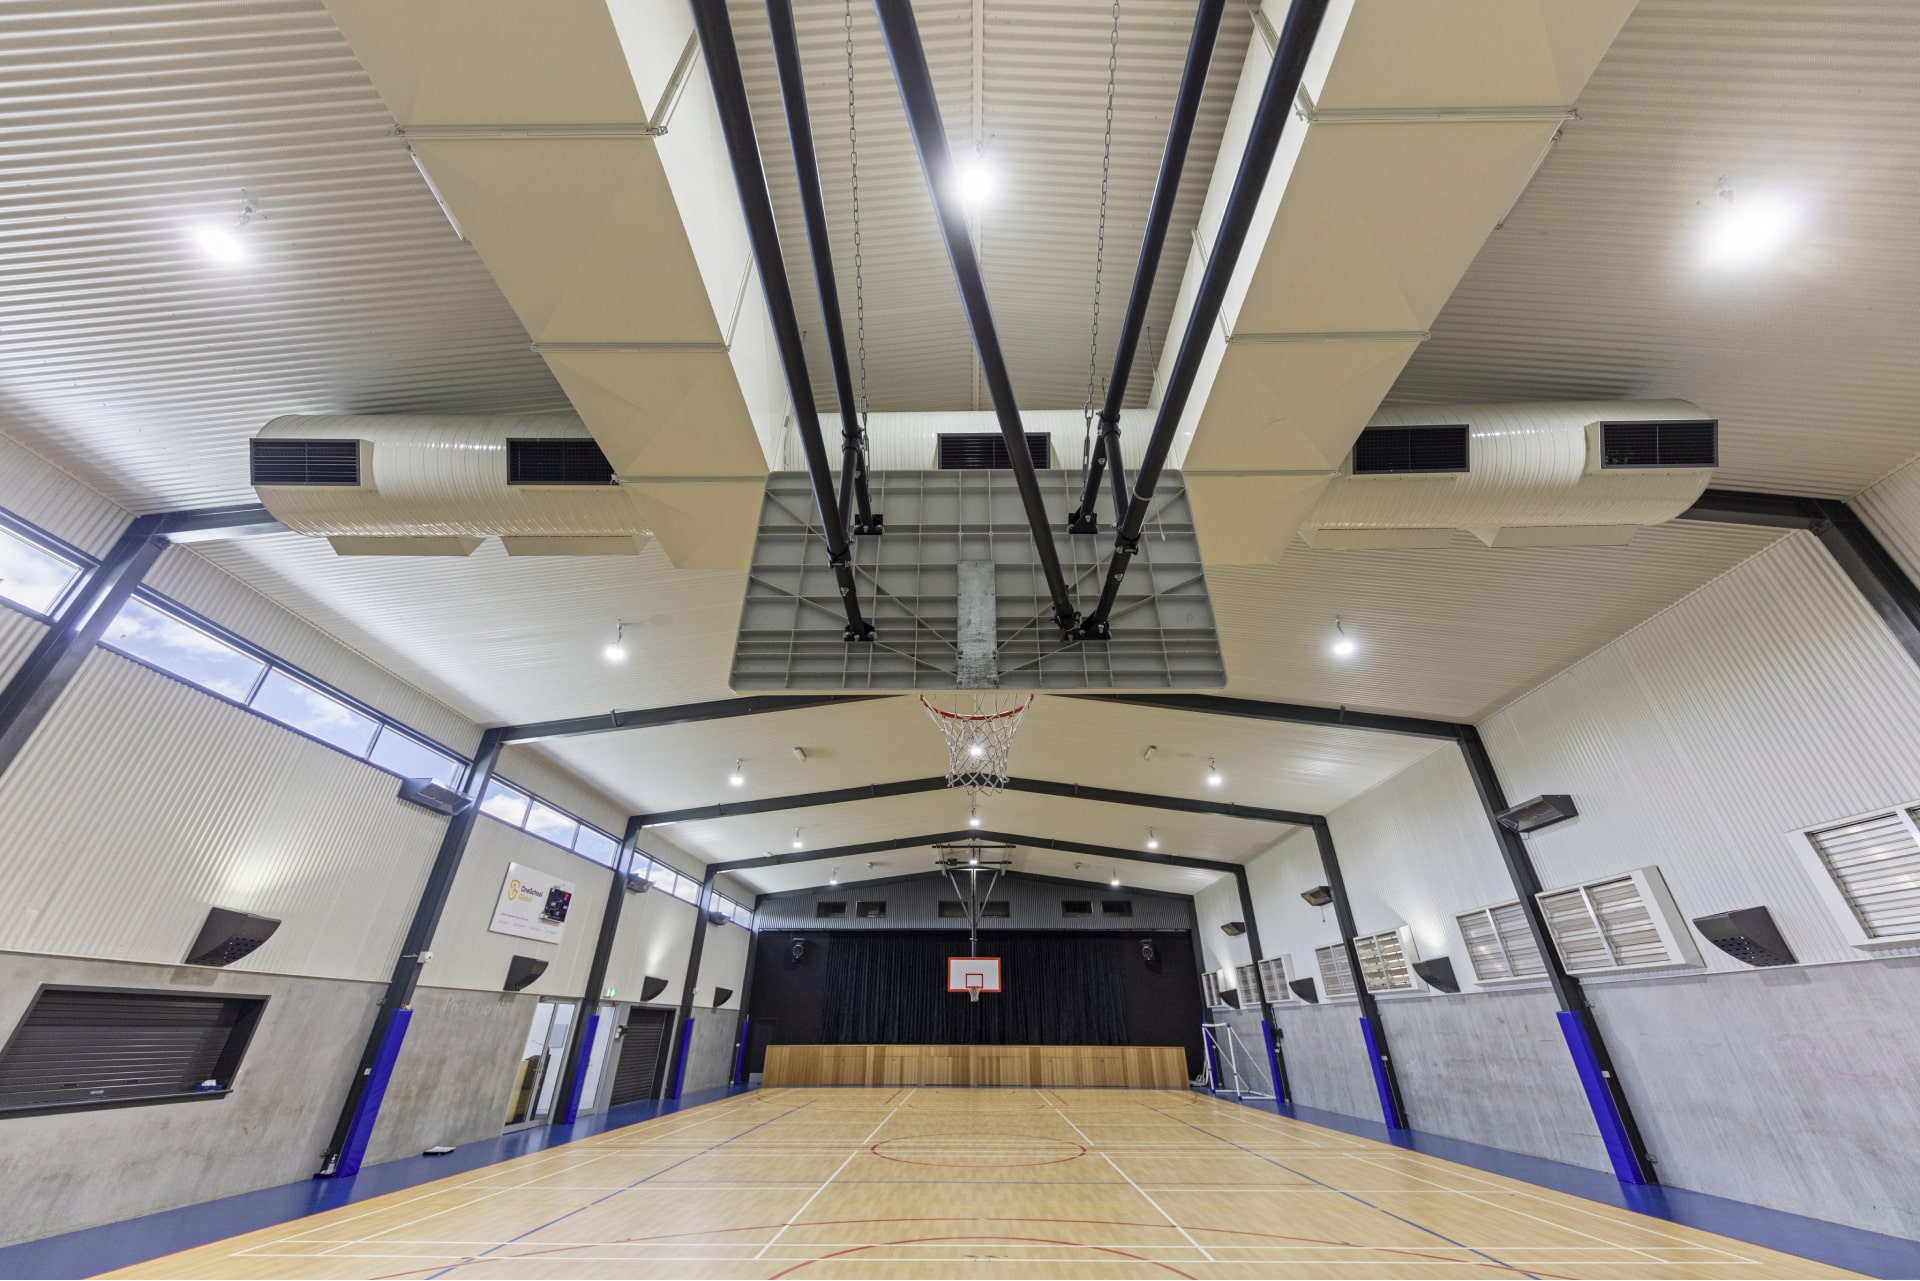 Indoor School Sports Arena Gymnasium